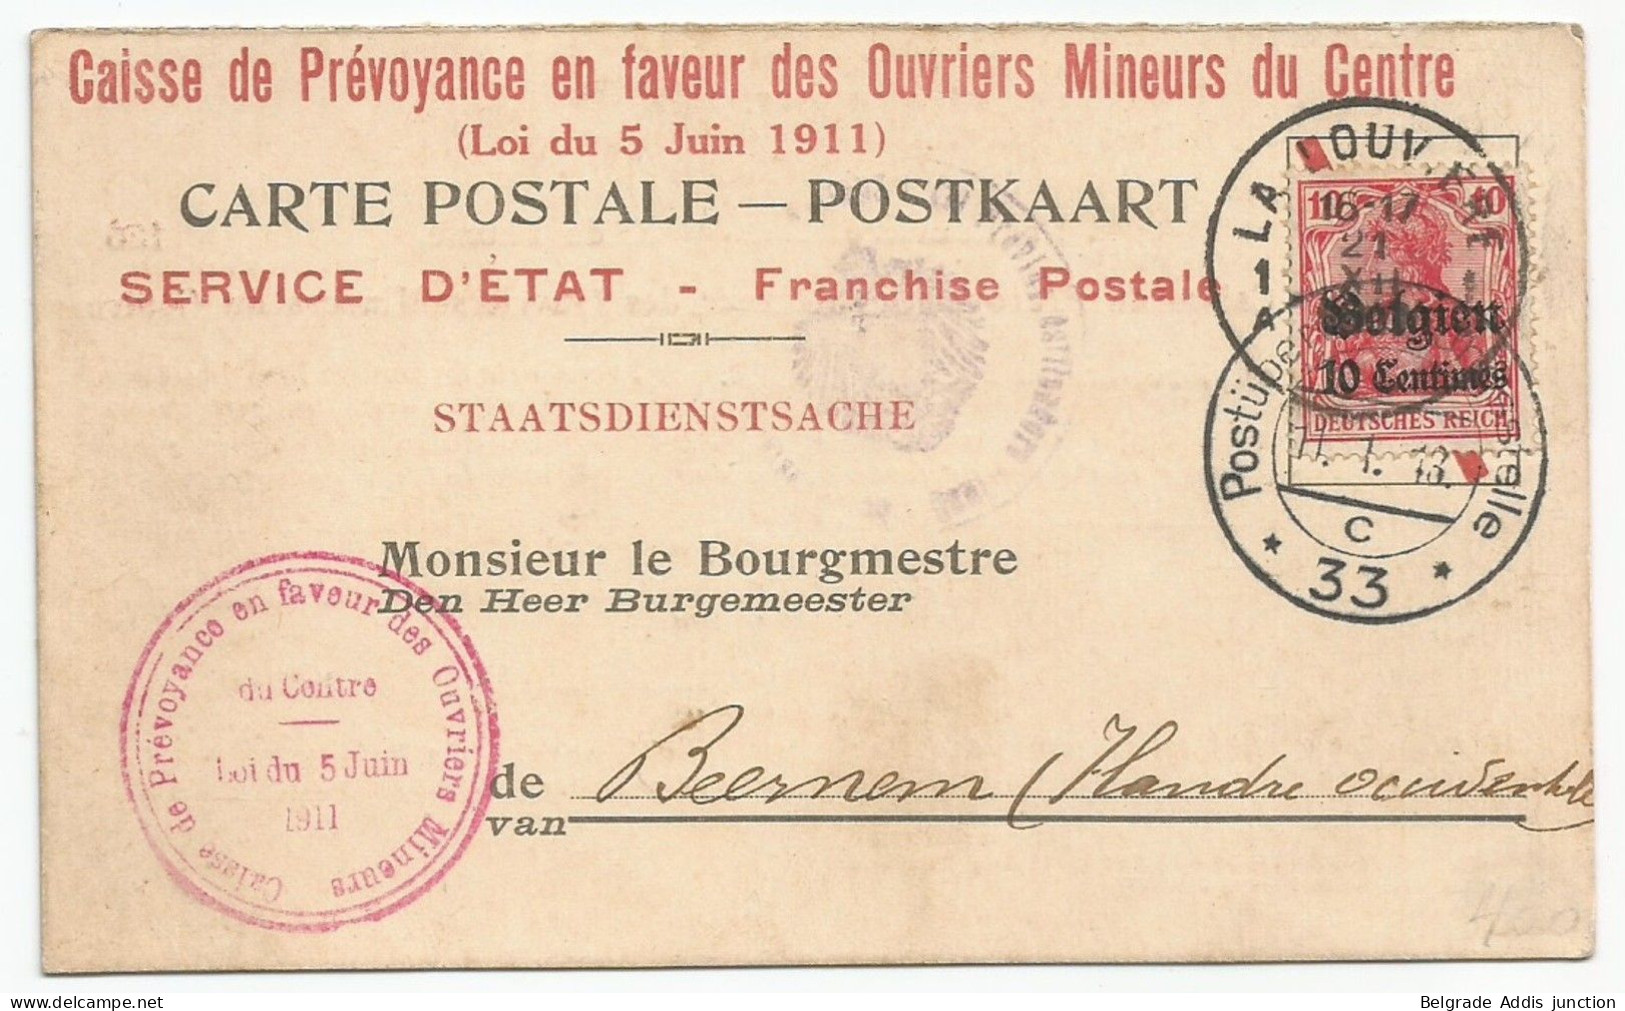 Belgique Belgie Allemagne Carte Postale Avec Censure 1917 La Louvière Caisse De Prévoyance Des Ouvriers Mineurs - Duitse Bezetting